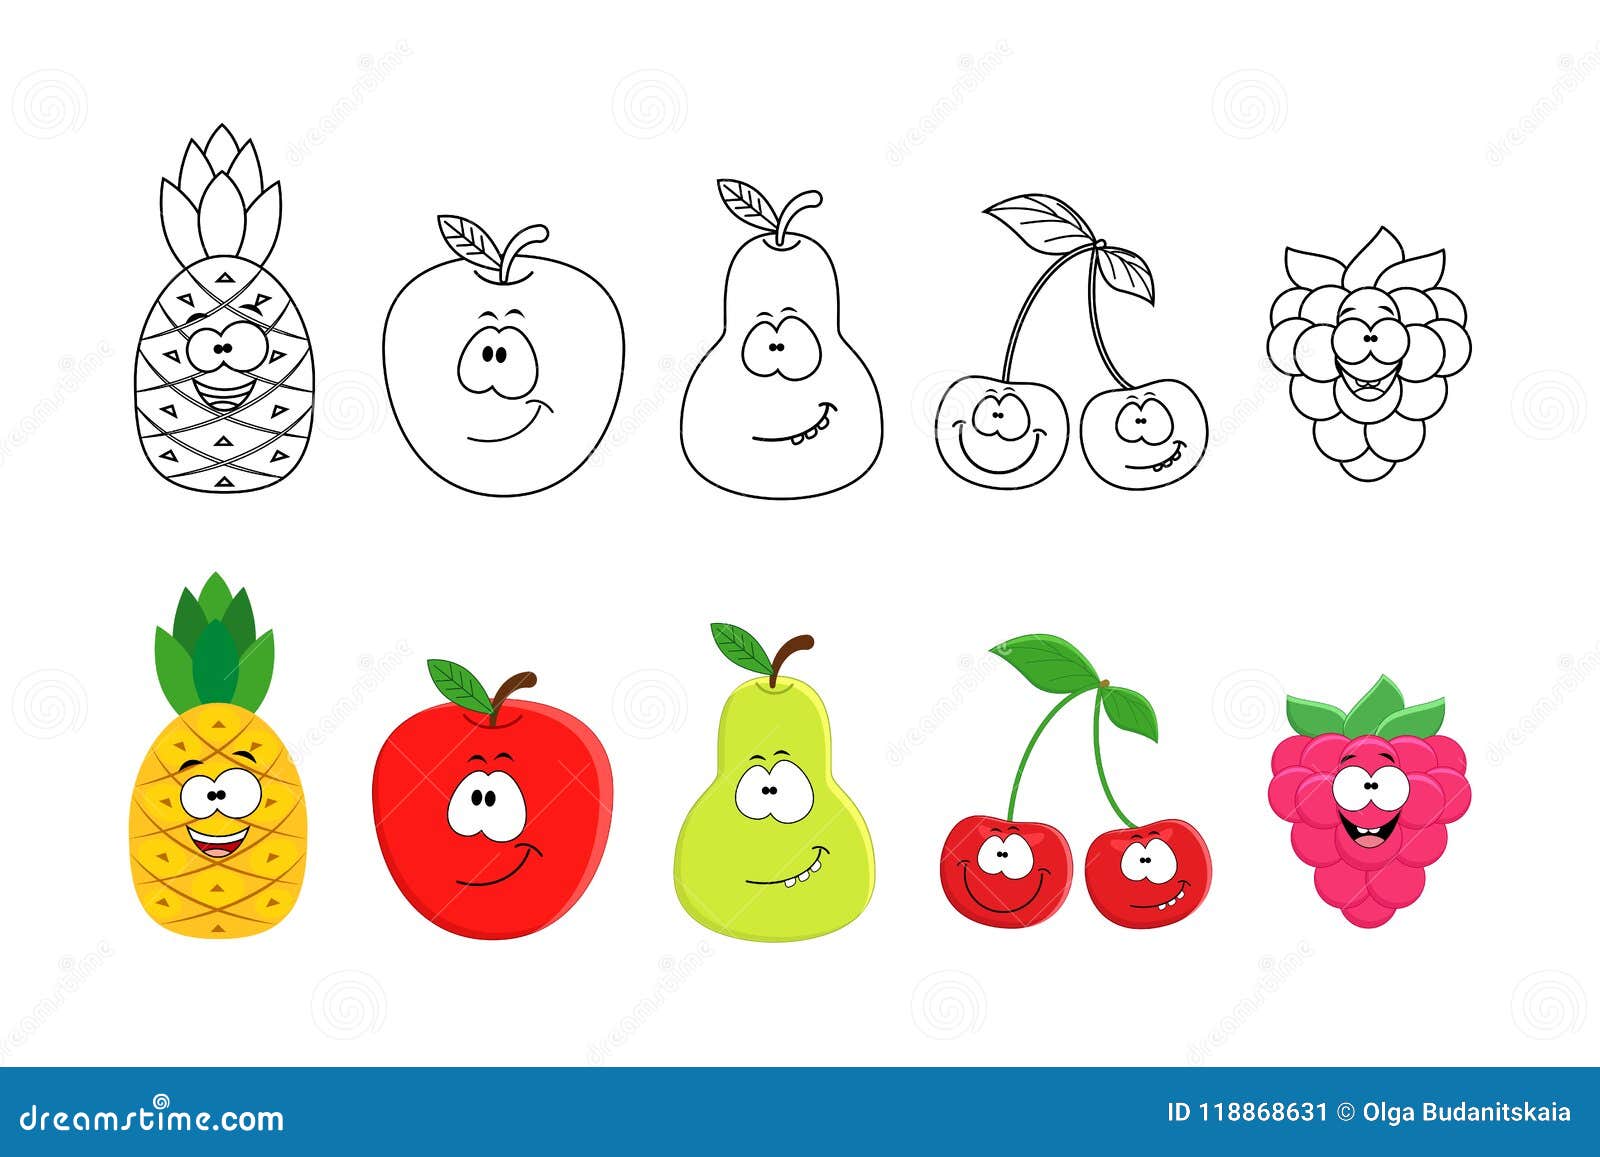 Desenhos De Frutas Para Colorir Para Colorir